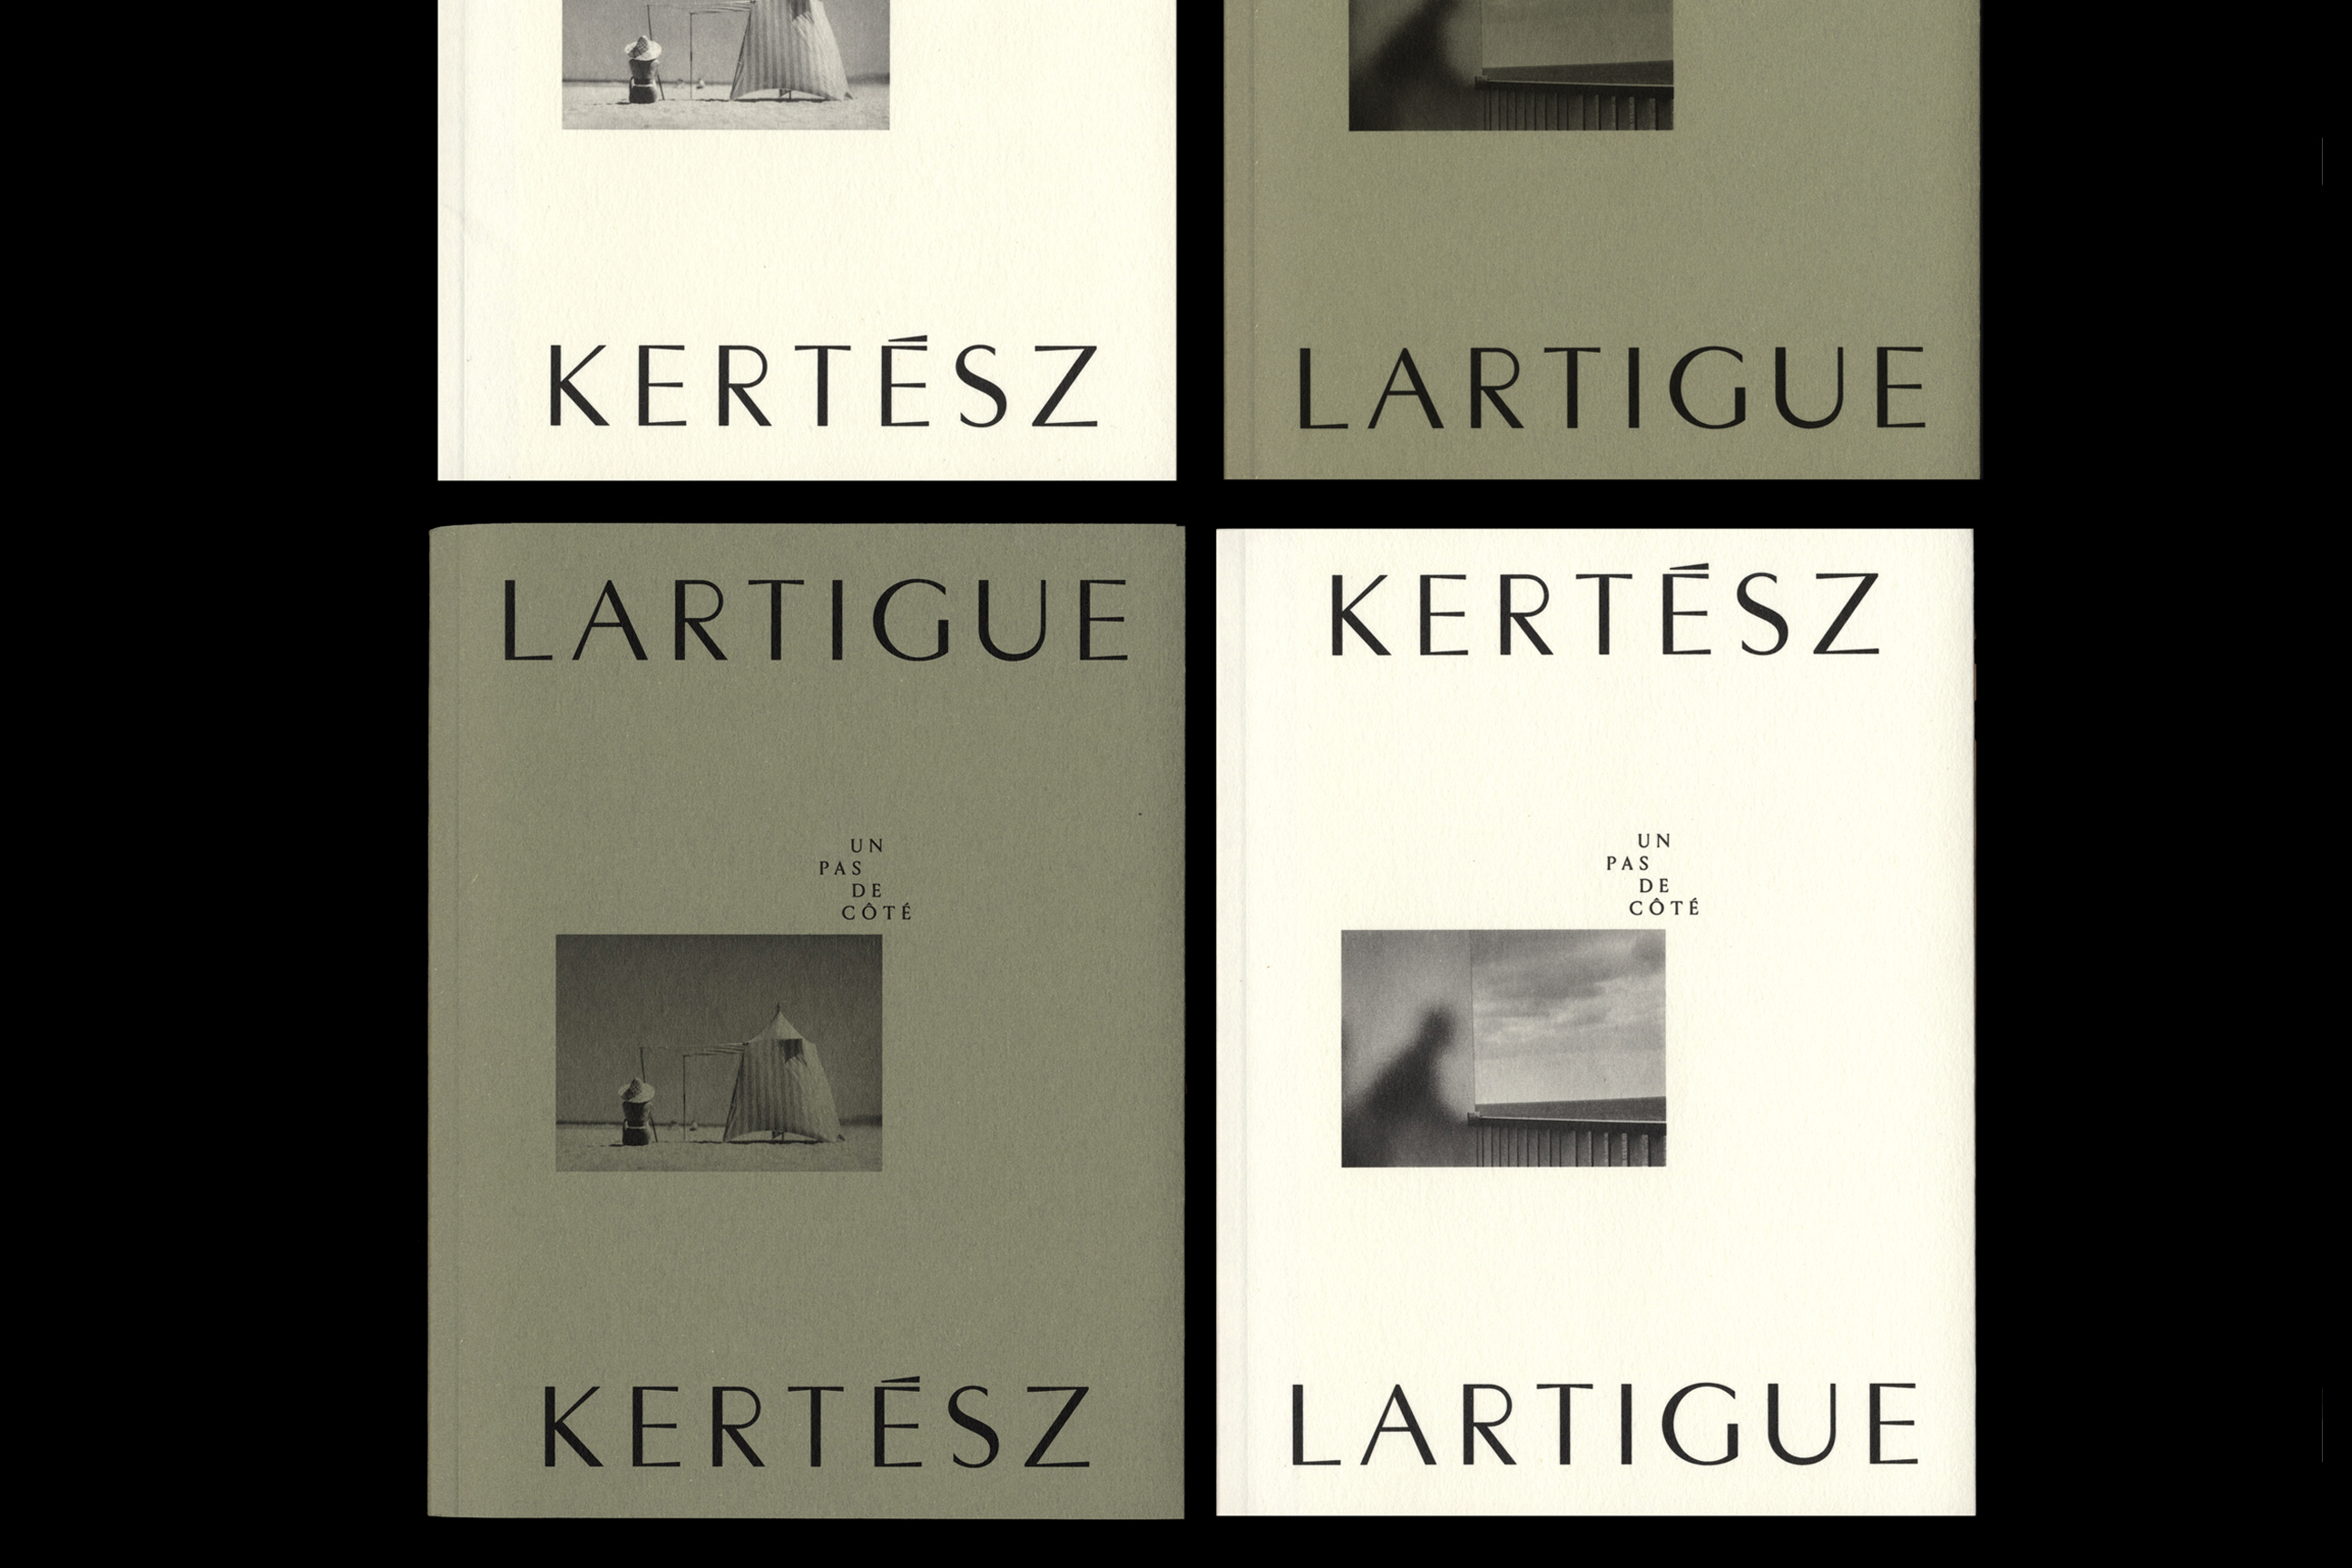 Kertesz Lartigue